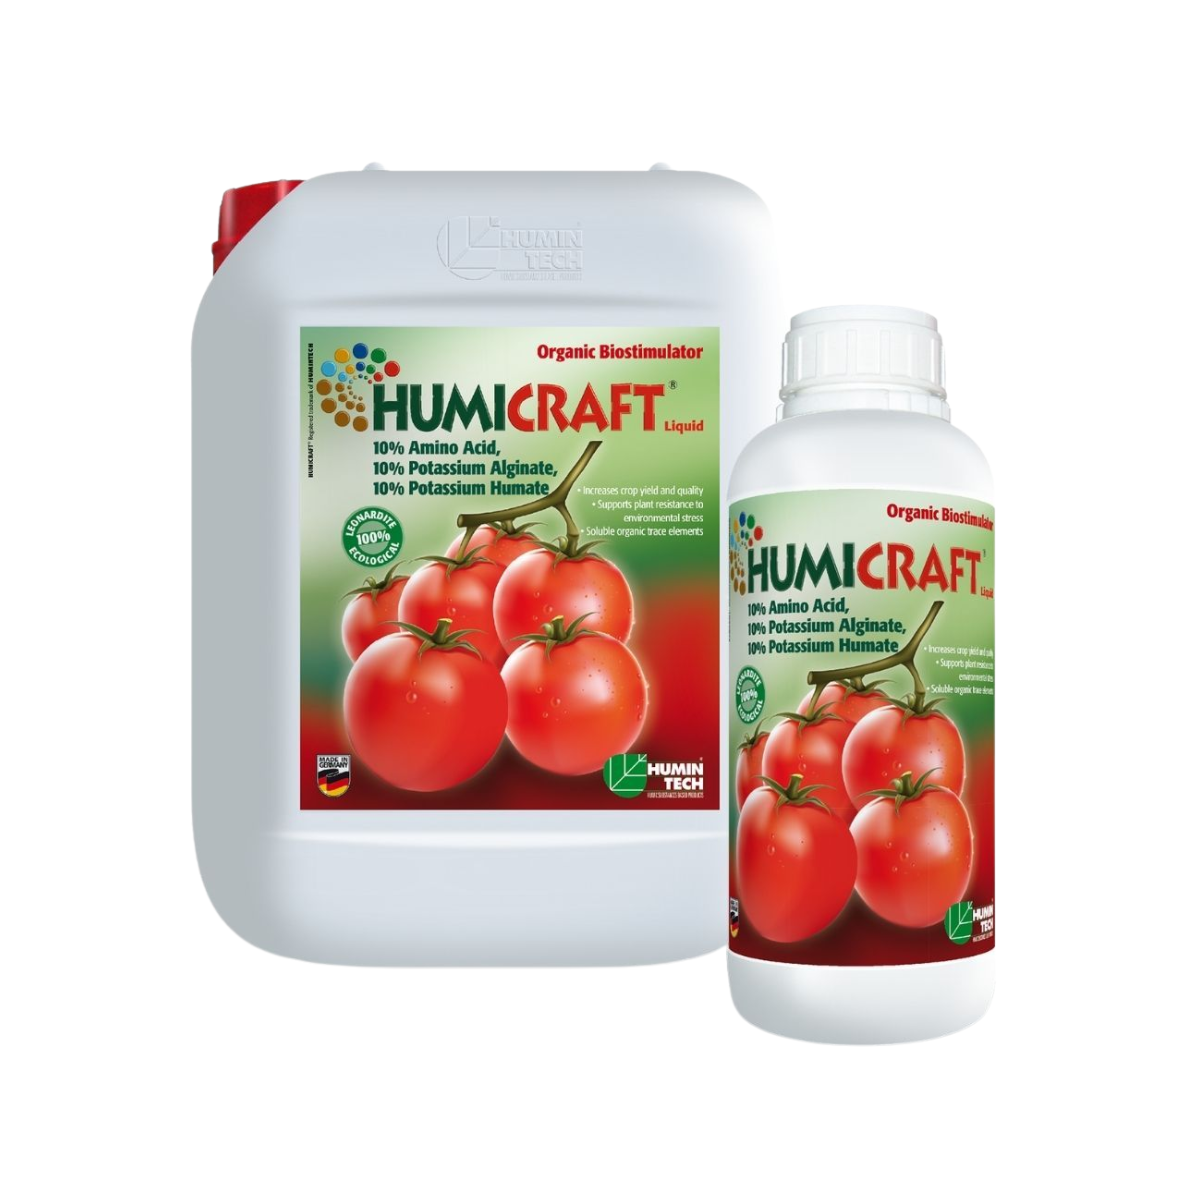 Biostimulatori eco - Biostimulator organic lichid pe baza de potasiu HUMICRAFT 20 litri, hectarul.ro